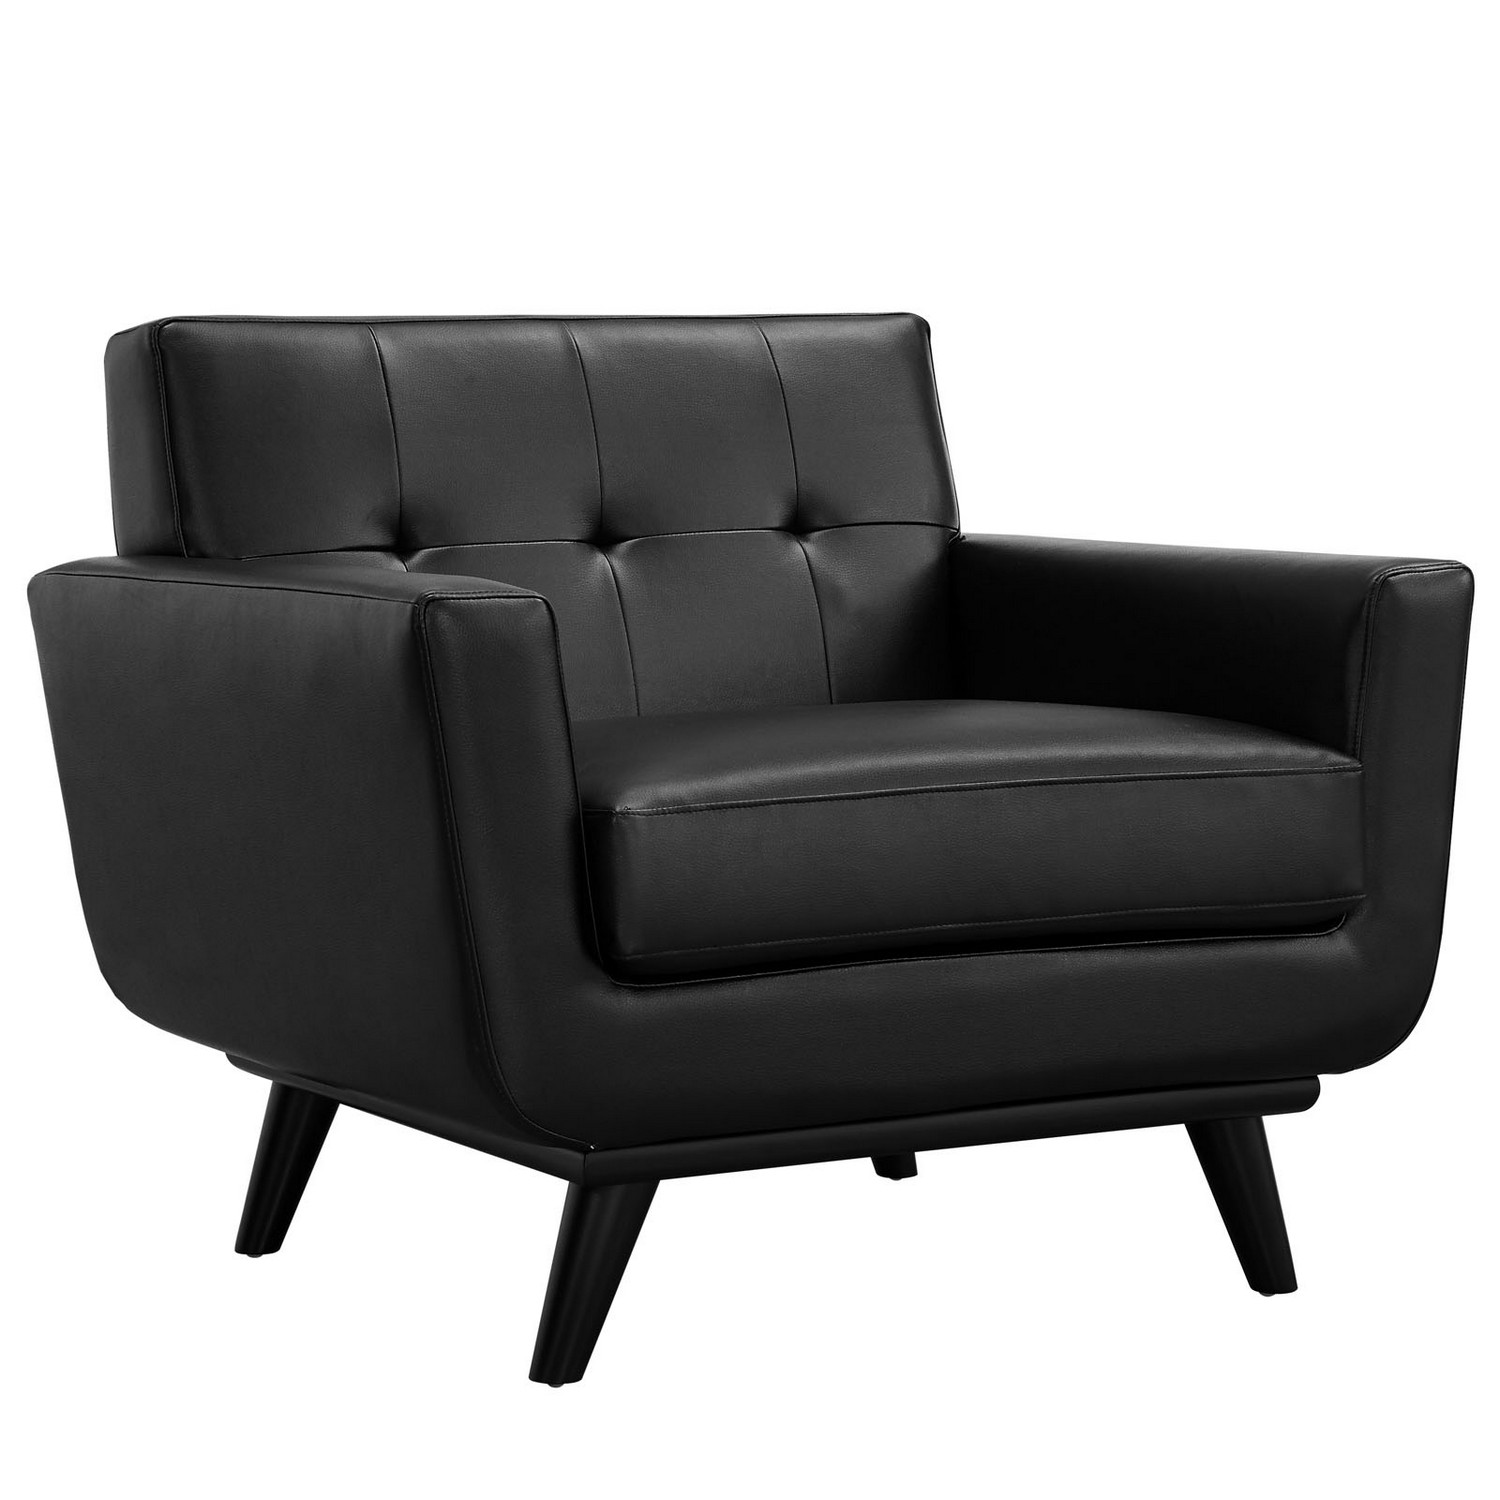 Modway Engage Leather Sofa Set - Black